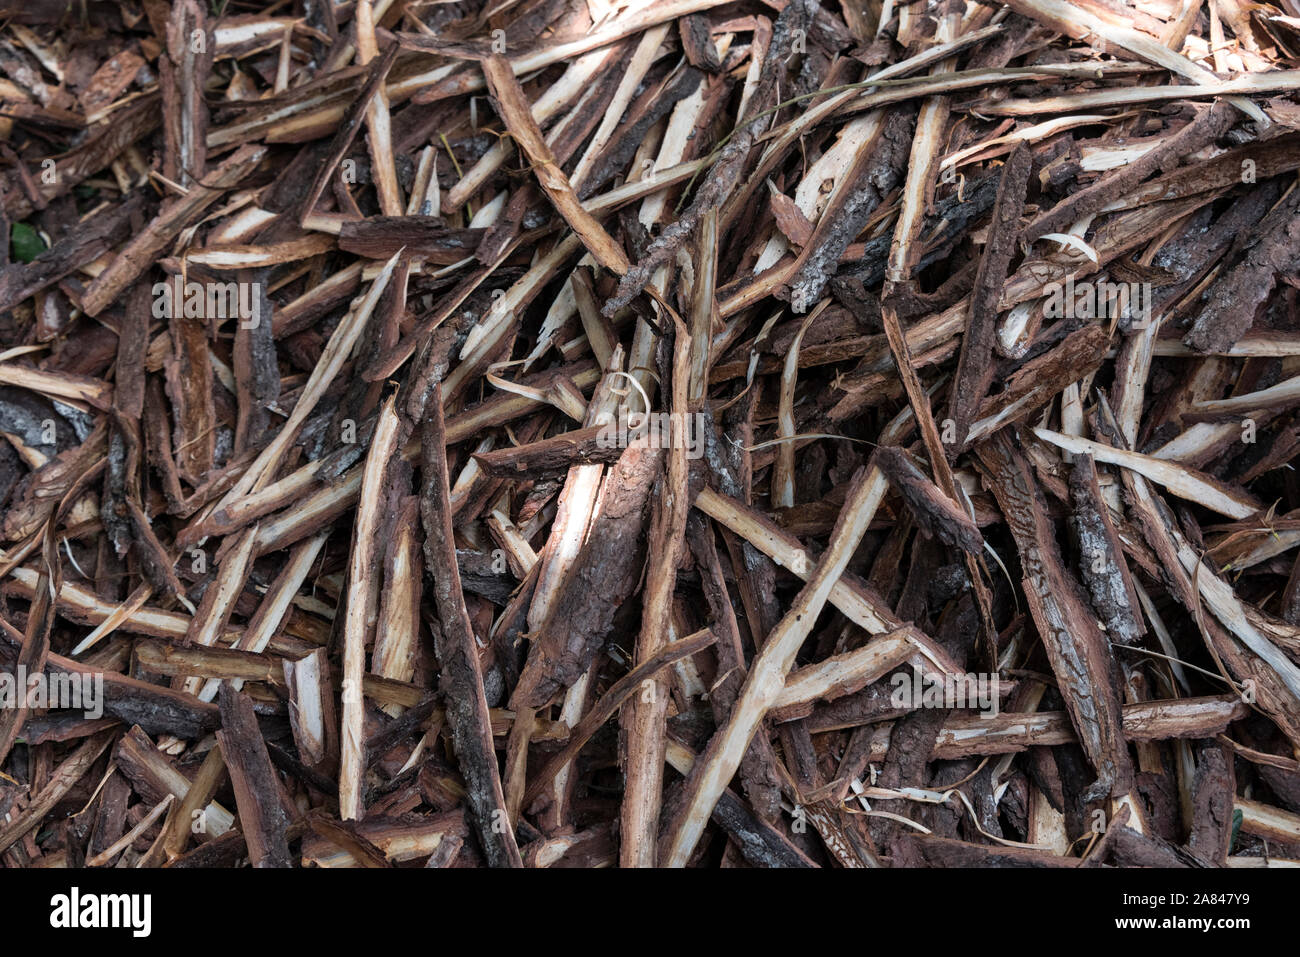 Trucioli di corteccia da poli lunghi che sono utilizzate per il fumo essiccato di appendere le foglie di tabacco all'interno di essiccazione del tabacco getta sulla coltivazione del tabacco di fattorie in Vall Foto Stock